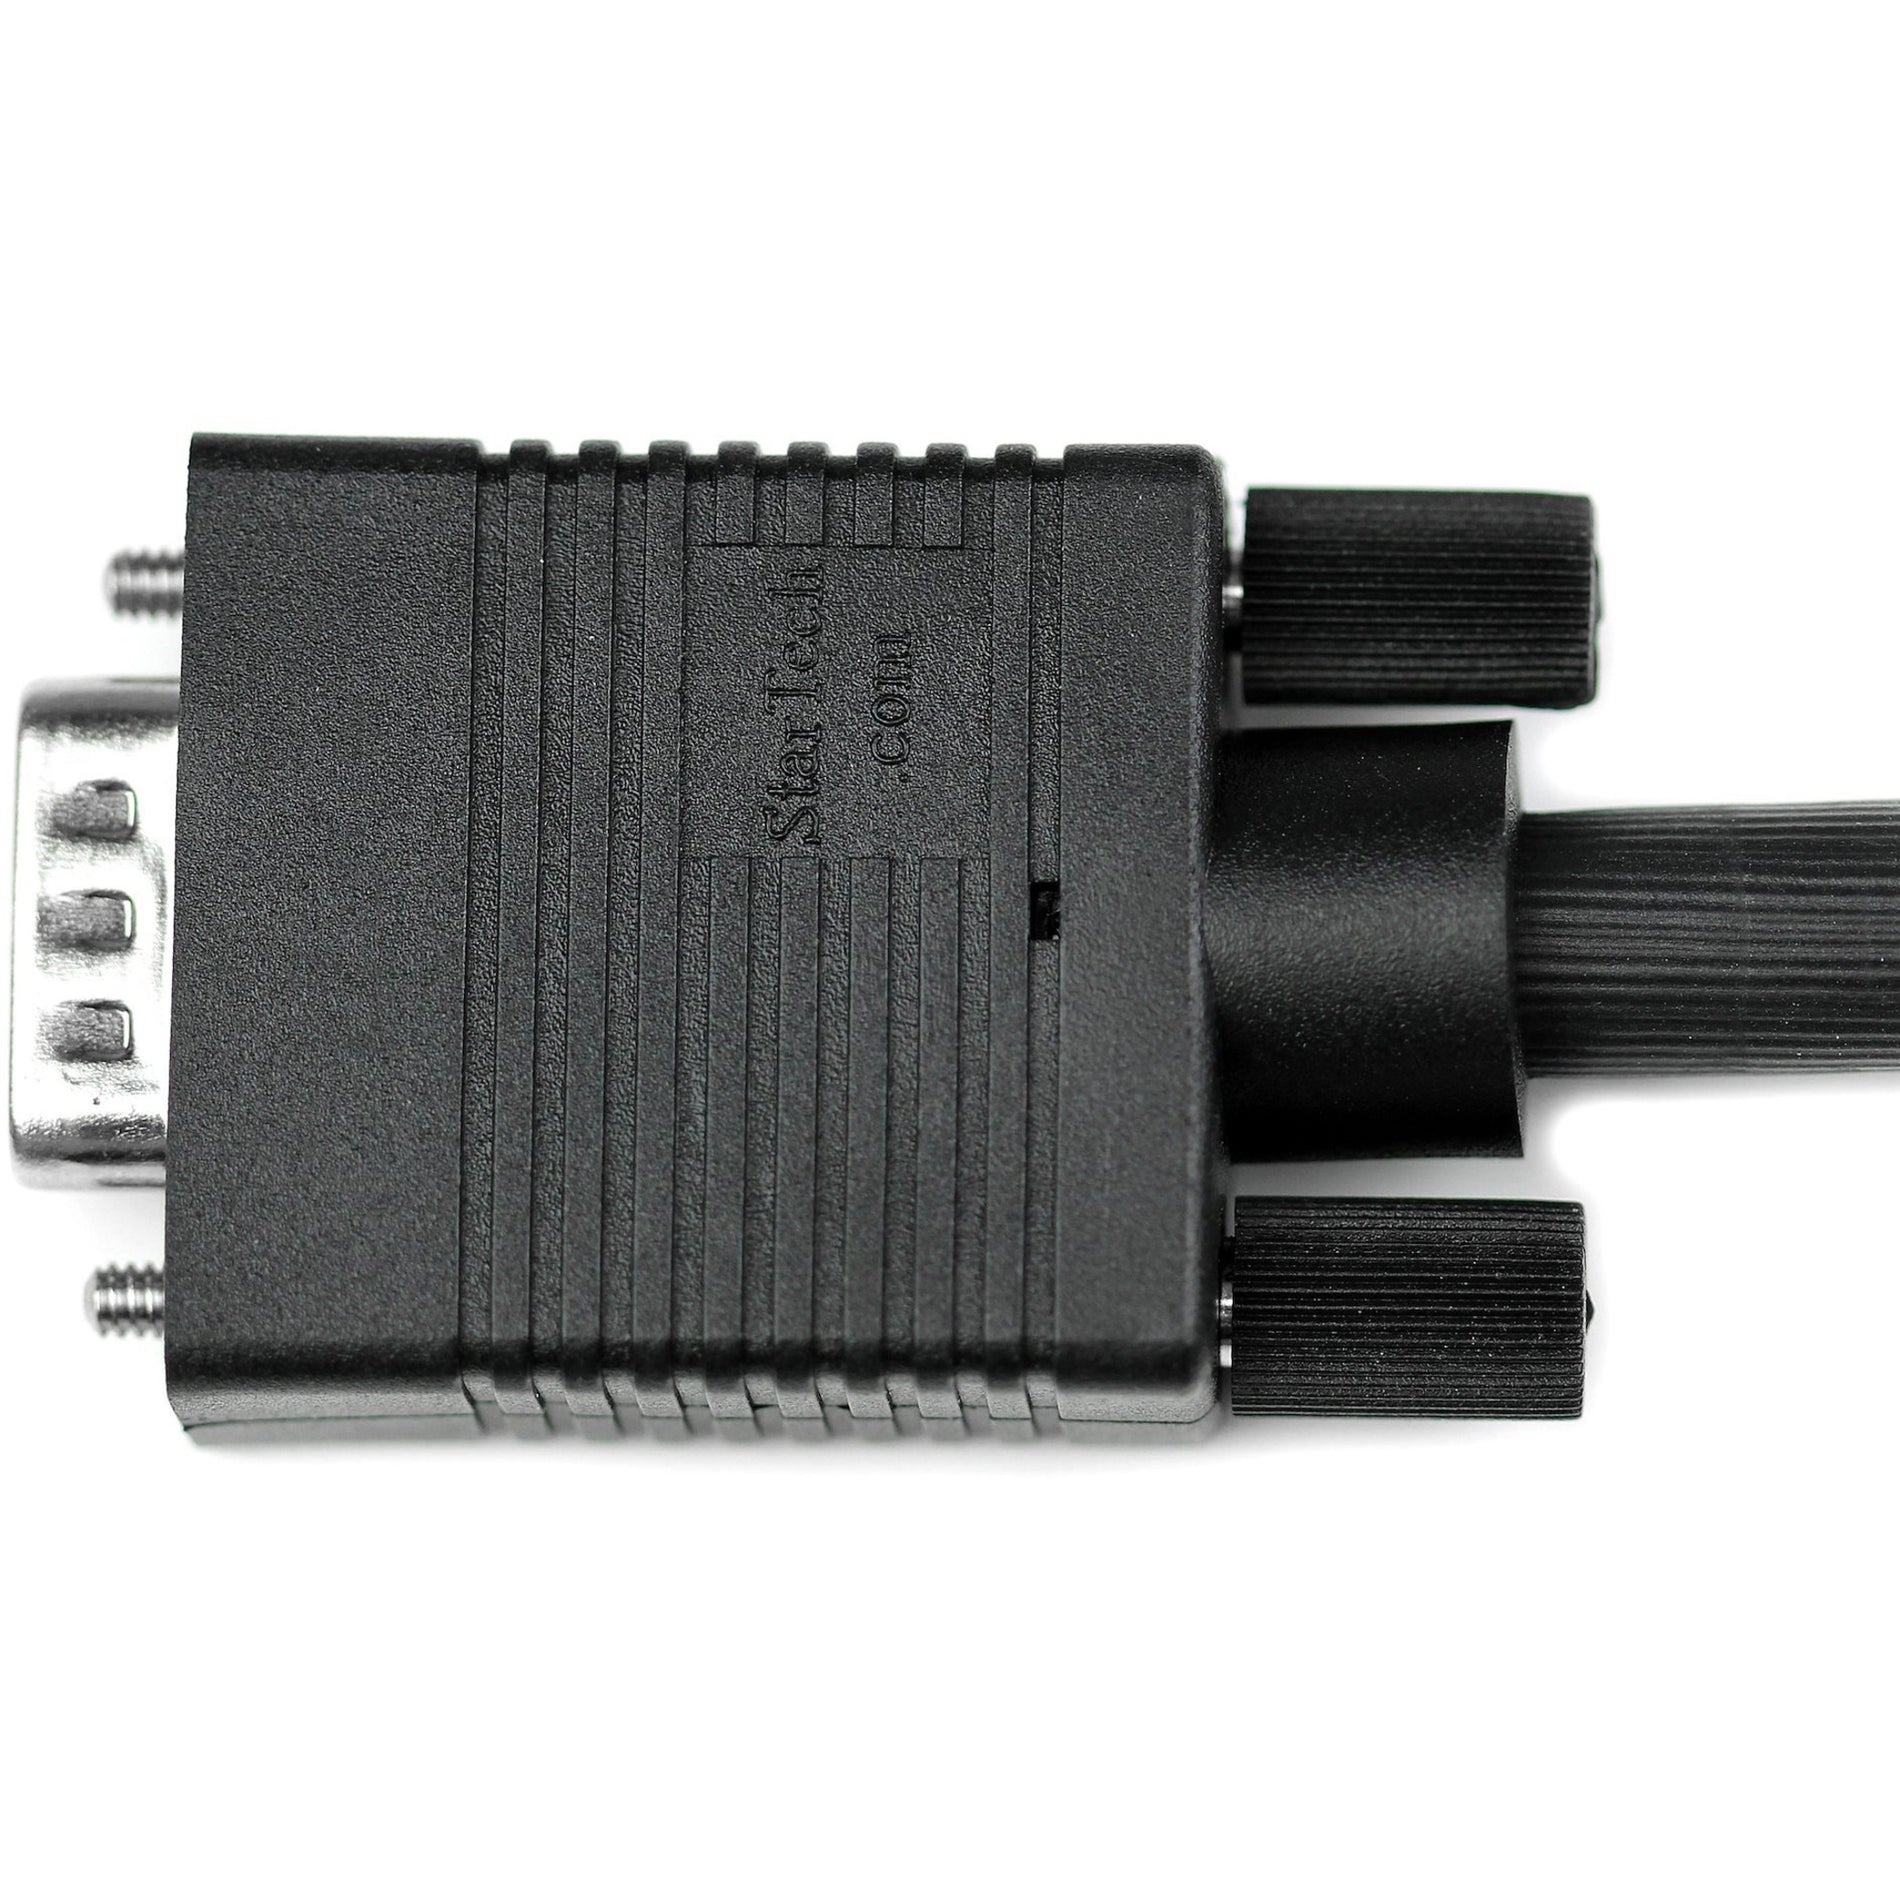 StarTech.com Cable de monitor VGA coaxial MXT101MMH100 100 pies - SVGA de alta resolución moldeado protección EMI perla de ferrita